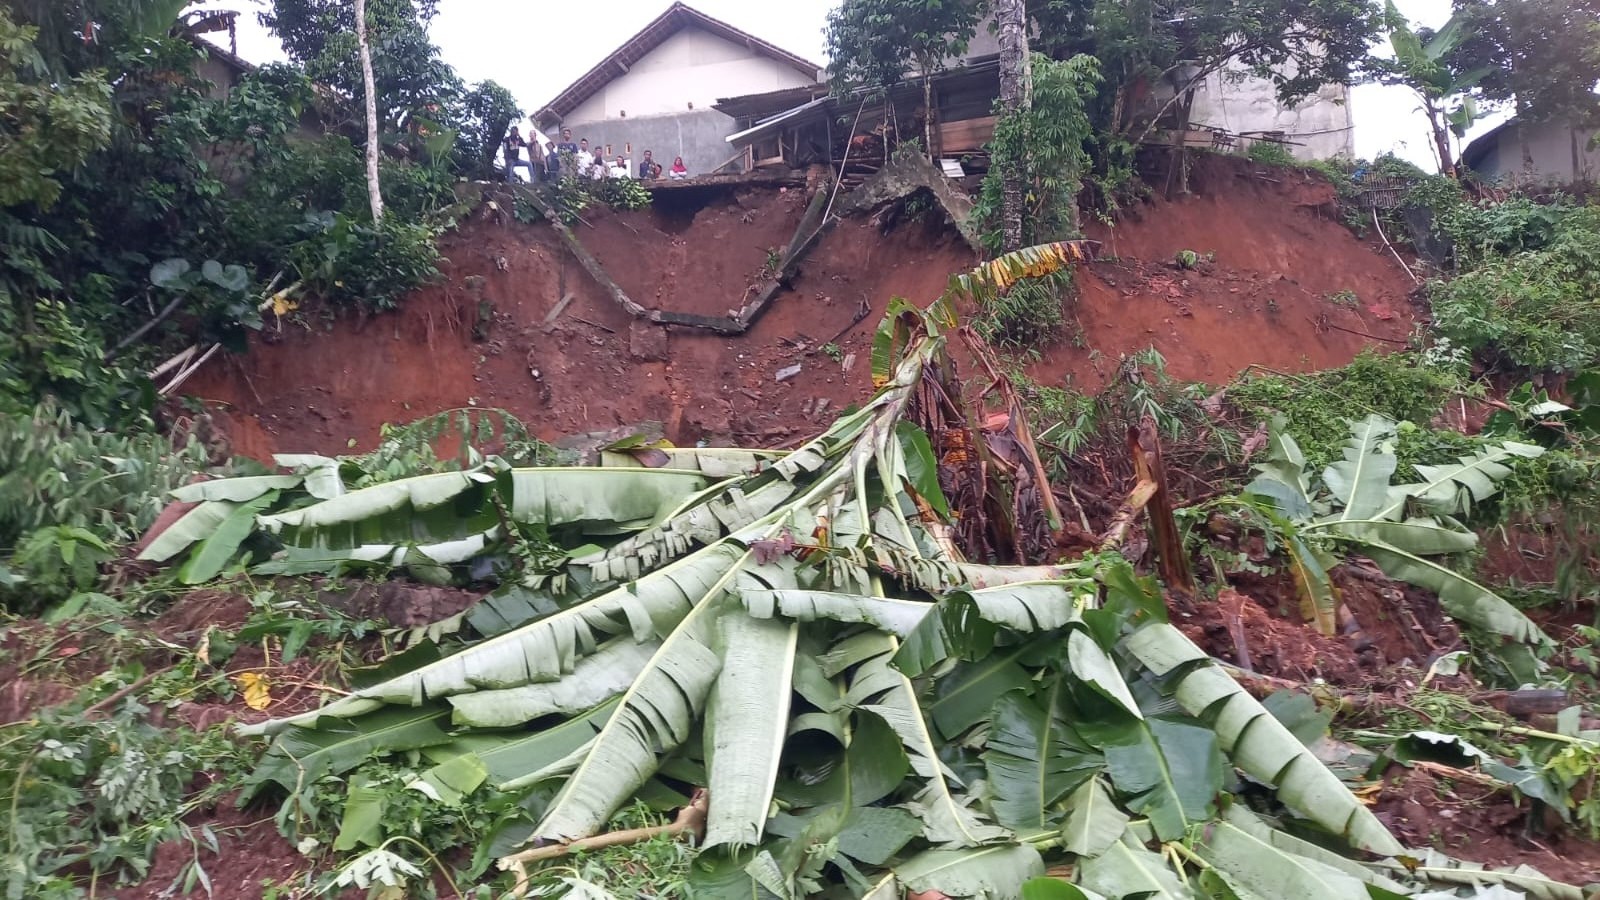 Bencana Longsor Terjadi di Giriwaringin, Akibatnya Tiga Rumah Rusak Parah Diterjang Longsor